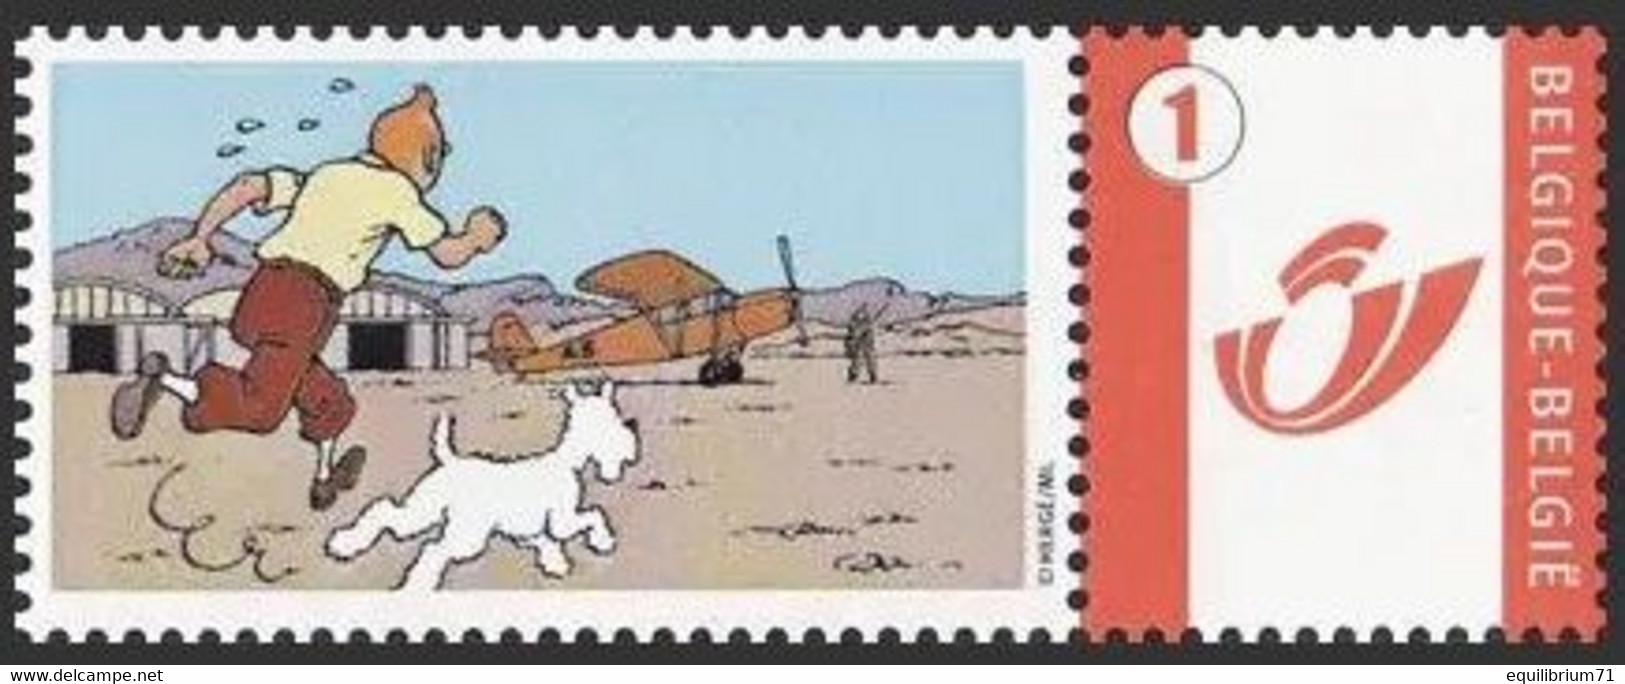 DUOSTAMP/MYSTAMP**  Tintin, Avion/Kuifje, Vliegtuig/Tim, Flugzeug/Tintin, Airplane - (Hergé) - Sous Blister/Verpakt - Philabédés (comics)